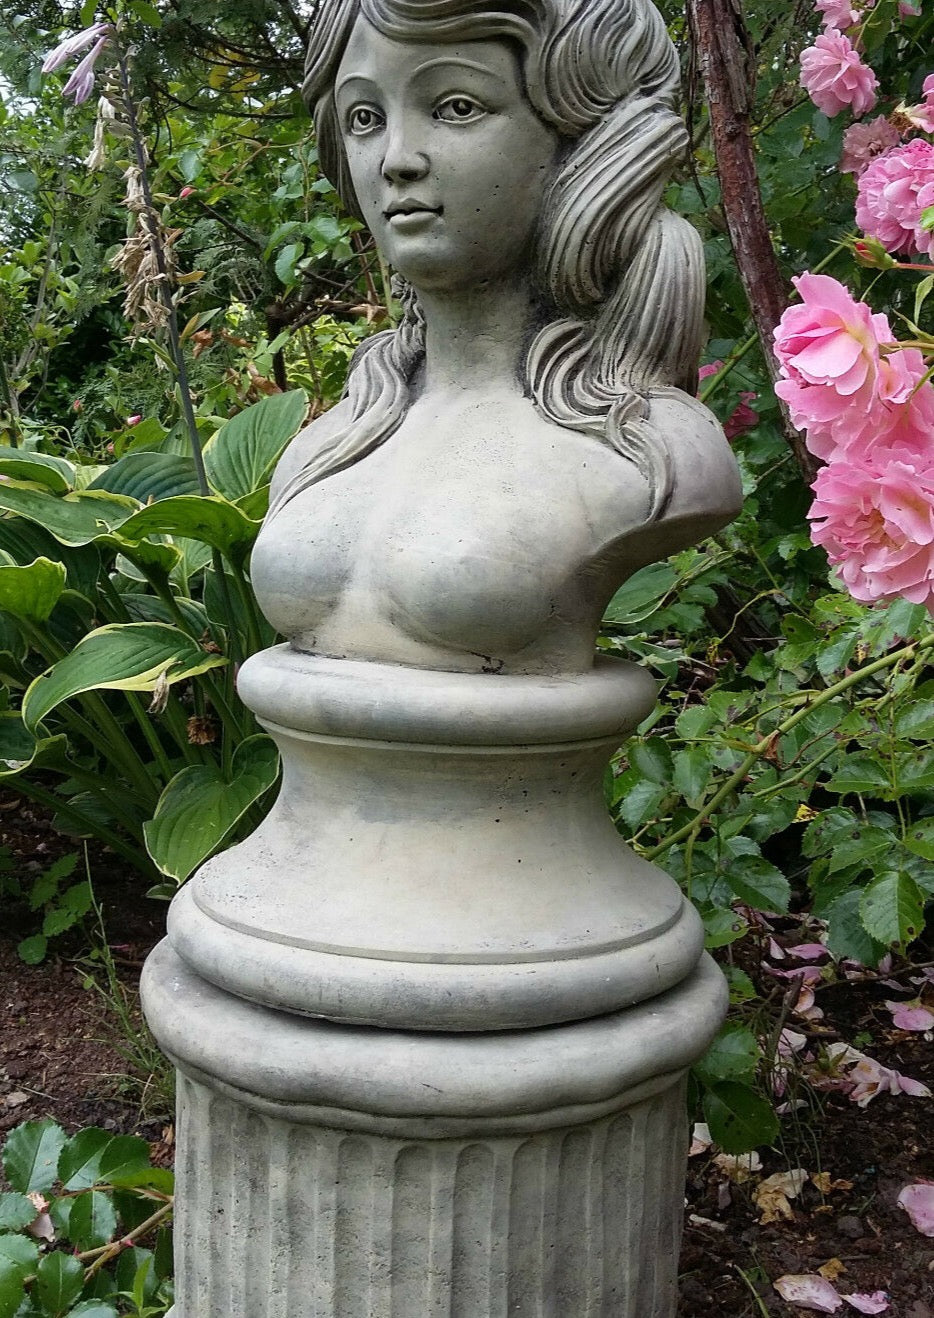 STONE GARDEN RACHEL LADY BUST ORNAMENT STATUE WOMAN FIGURE – Ferney Heyes  Garden Products